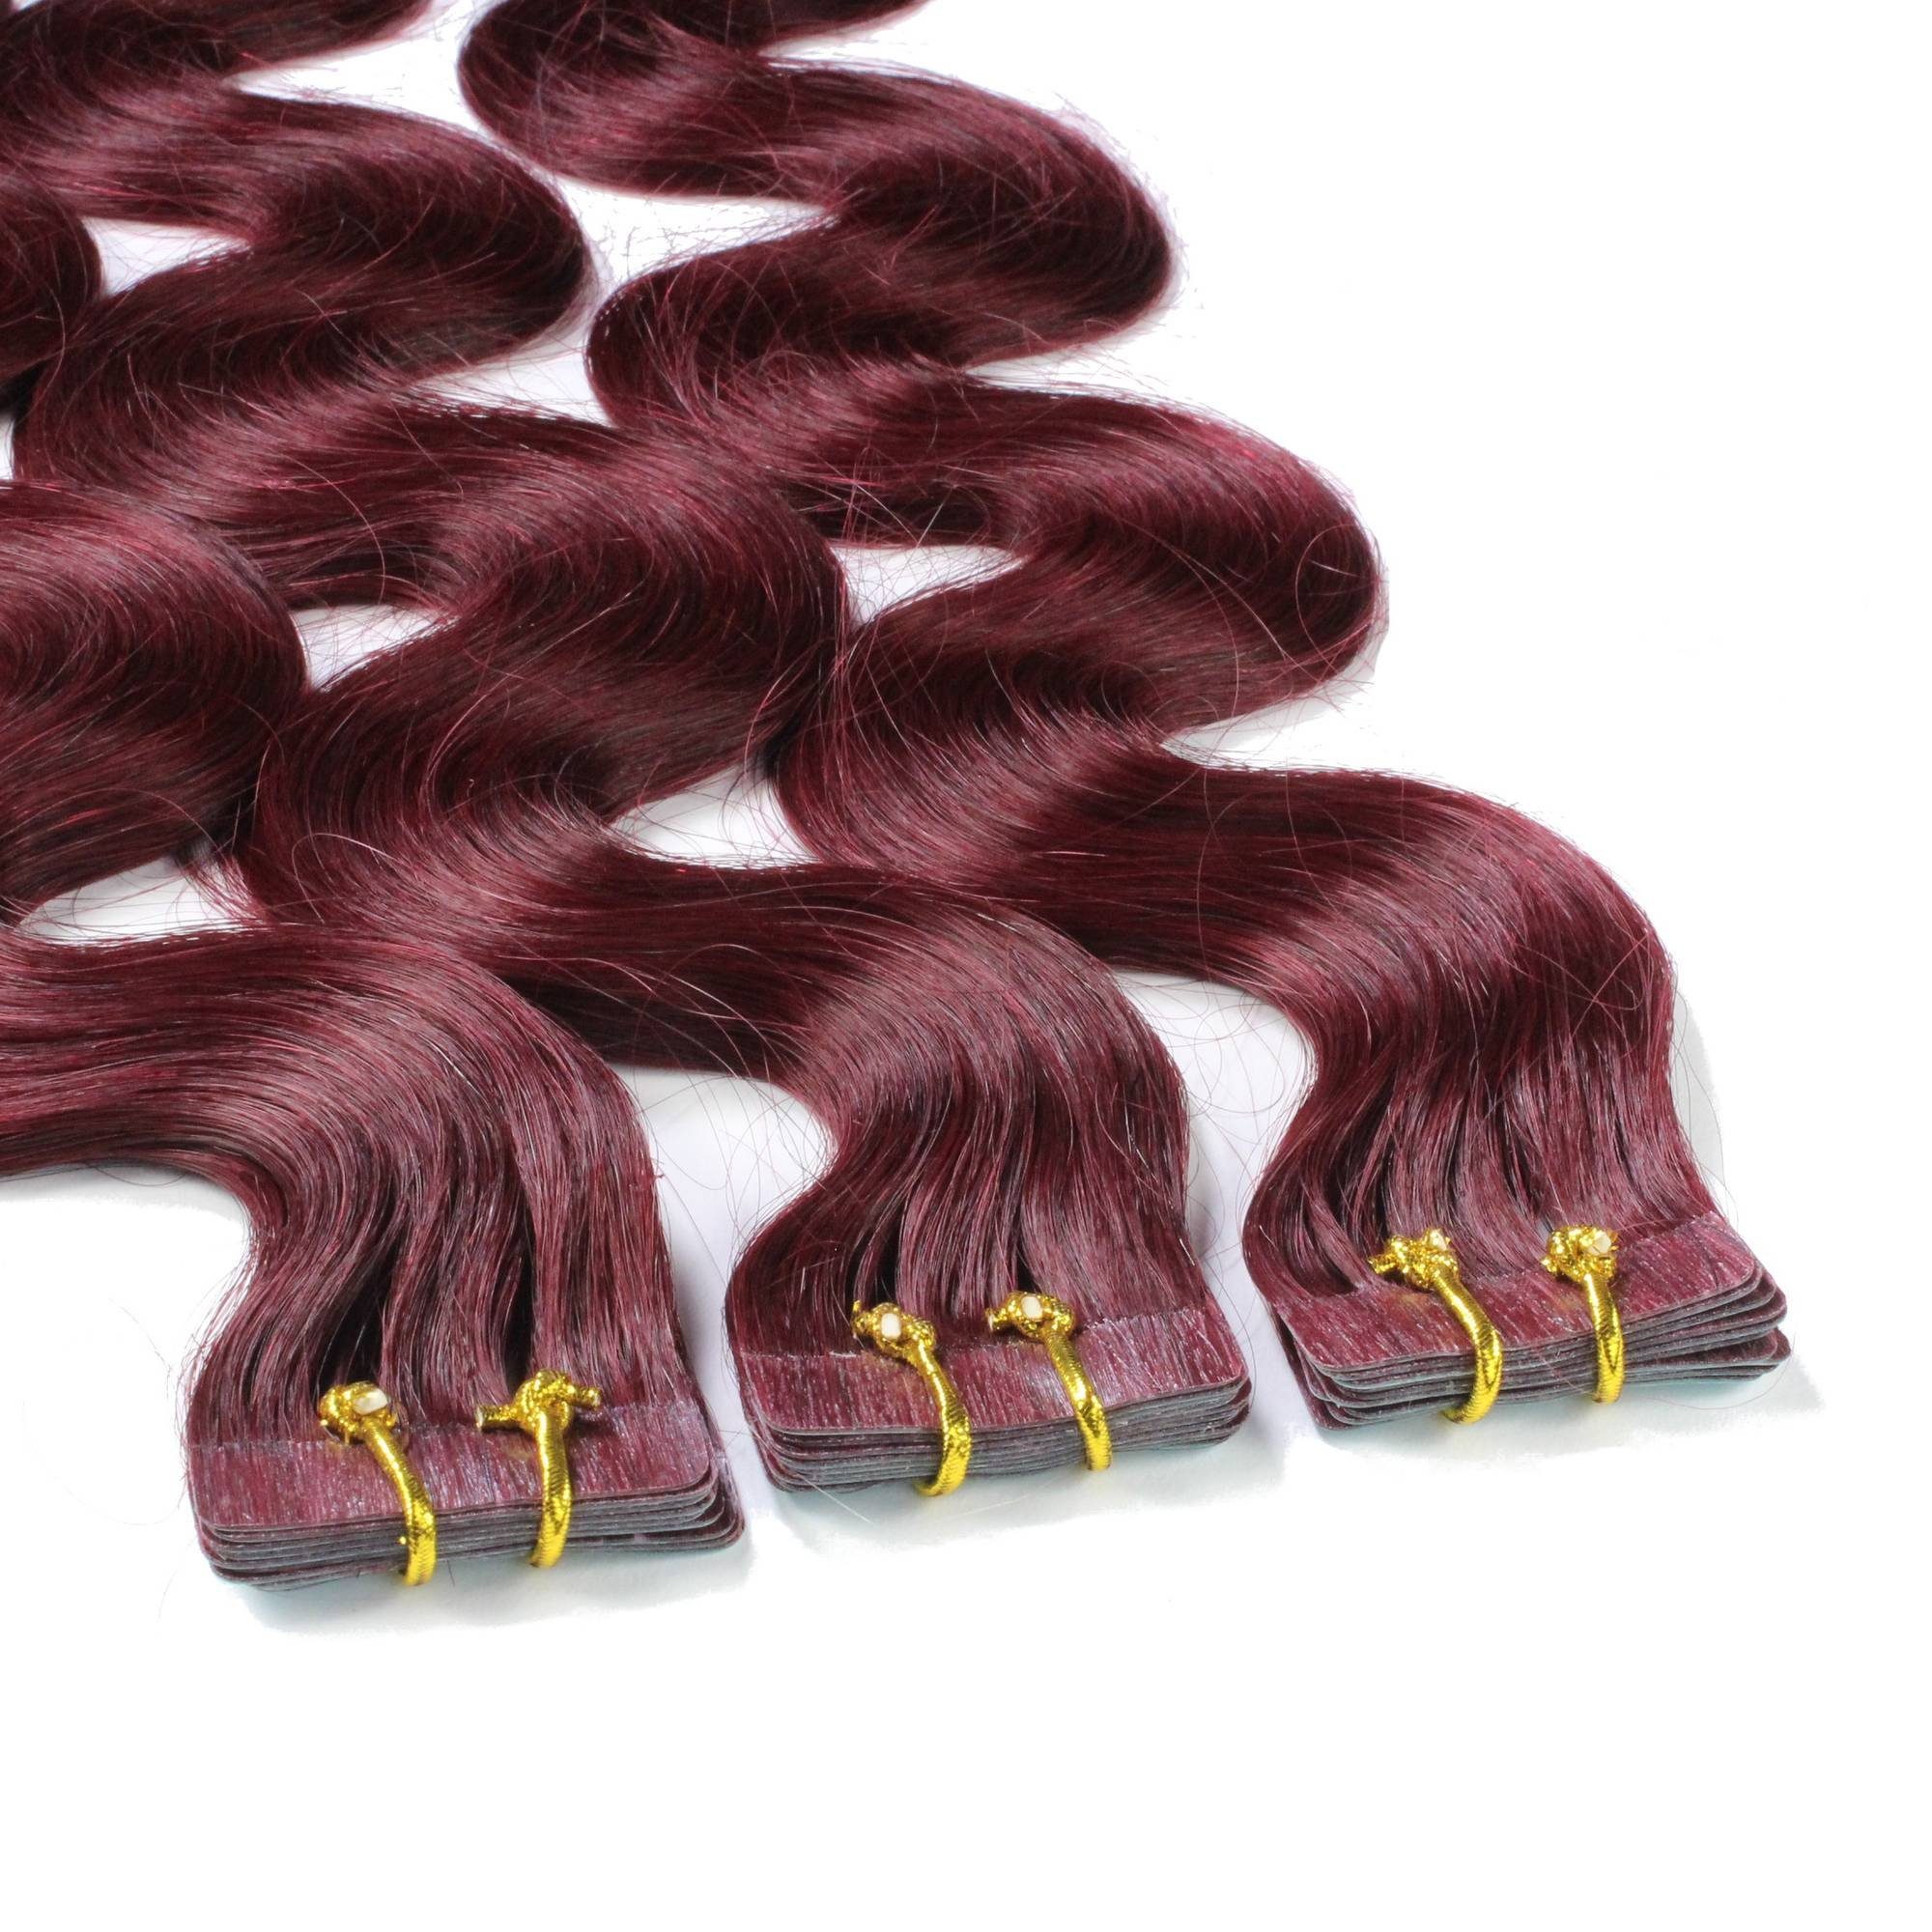 40cm Extensions #55/66 Echthaar-Extension Hellbraun Violett gewellt hair2heart Tape